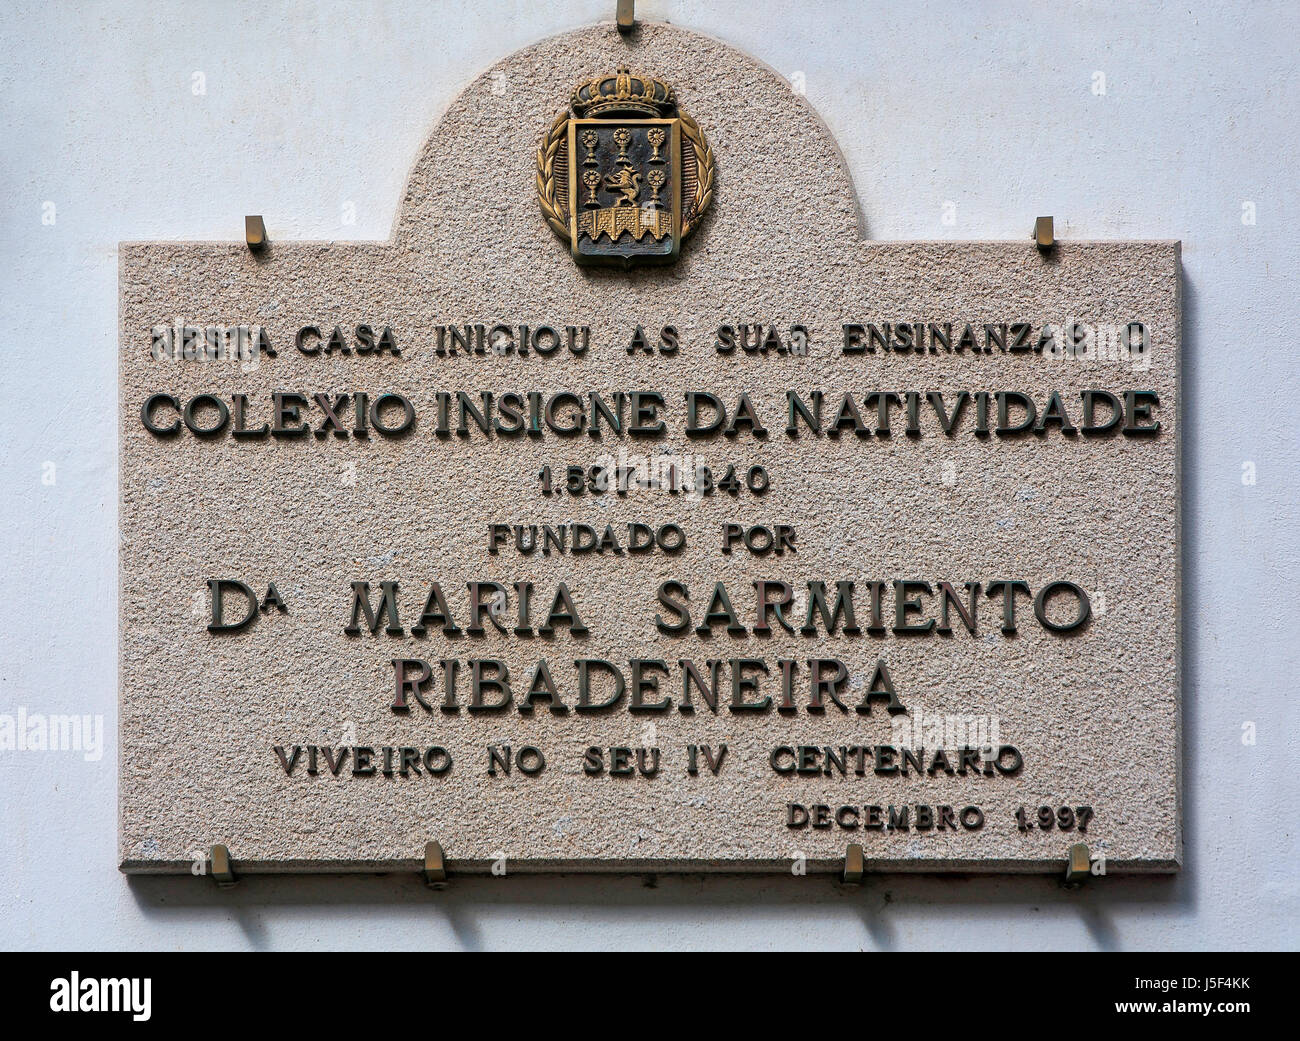 Insigne da Natividade college-stone plaque, Viveiro, Lugo province, Region of Galicia, Spain, Europe Stock Photo